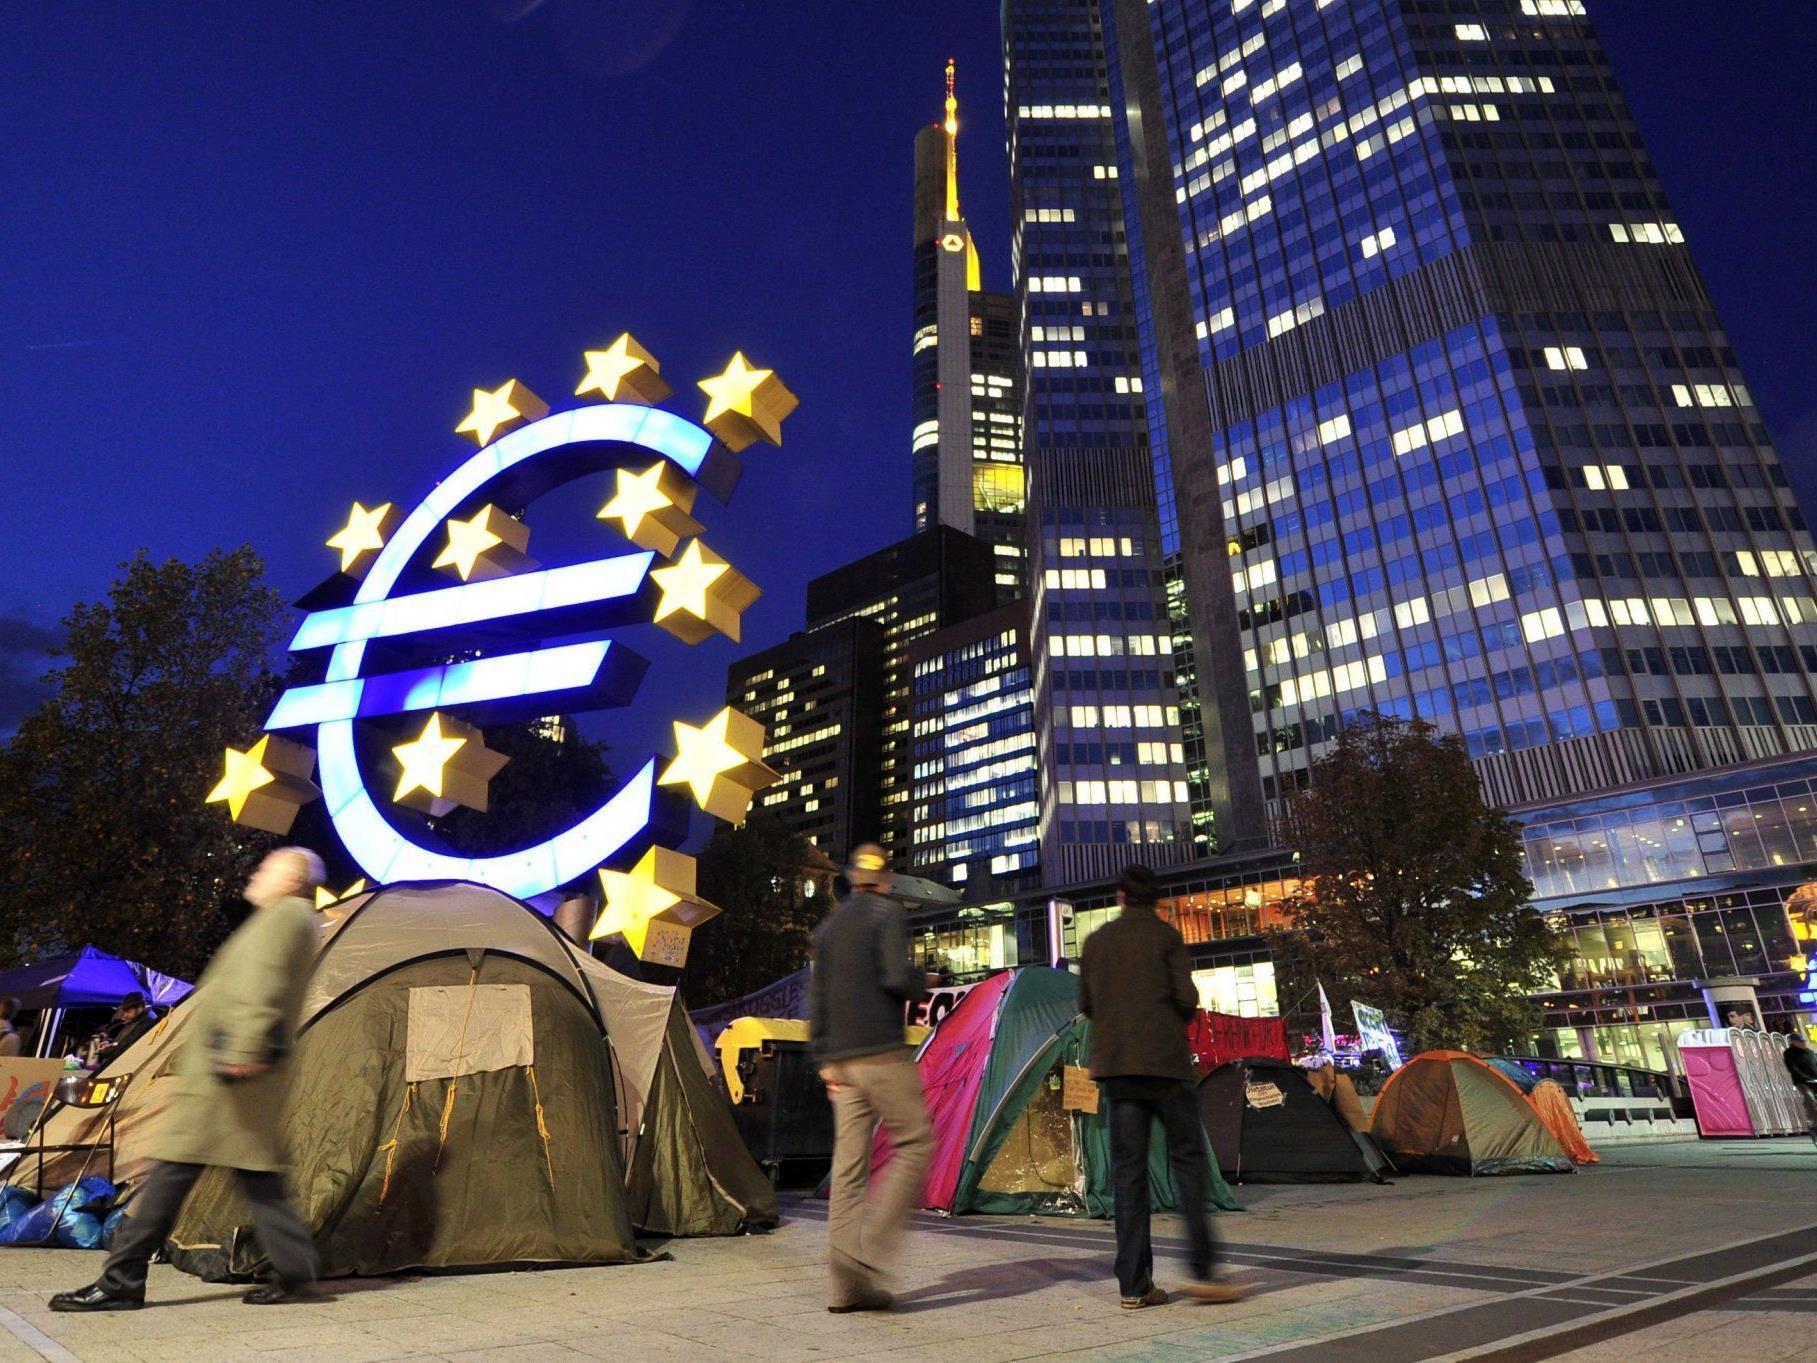 2011 war ein aufregendes Jahr in der EZB-Geschichte, 2012 könnte zum Schicksalsjahr werden.